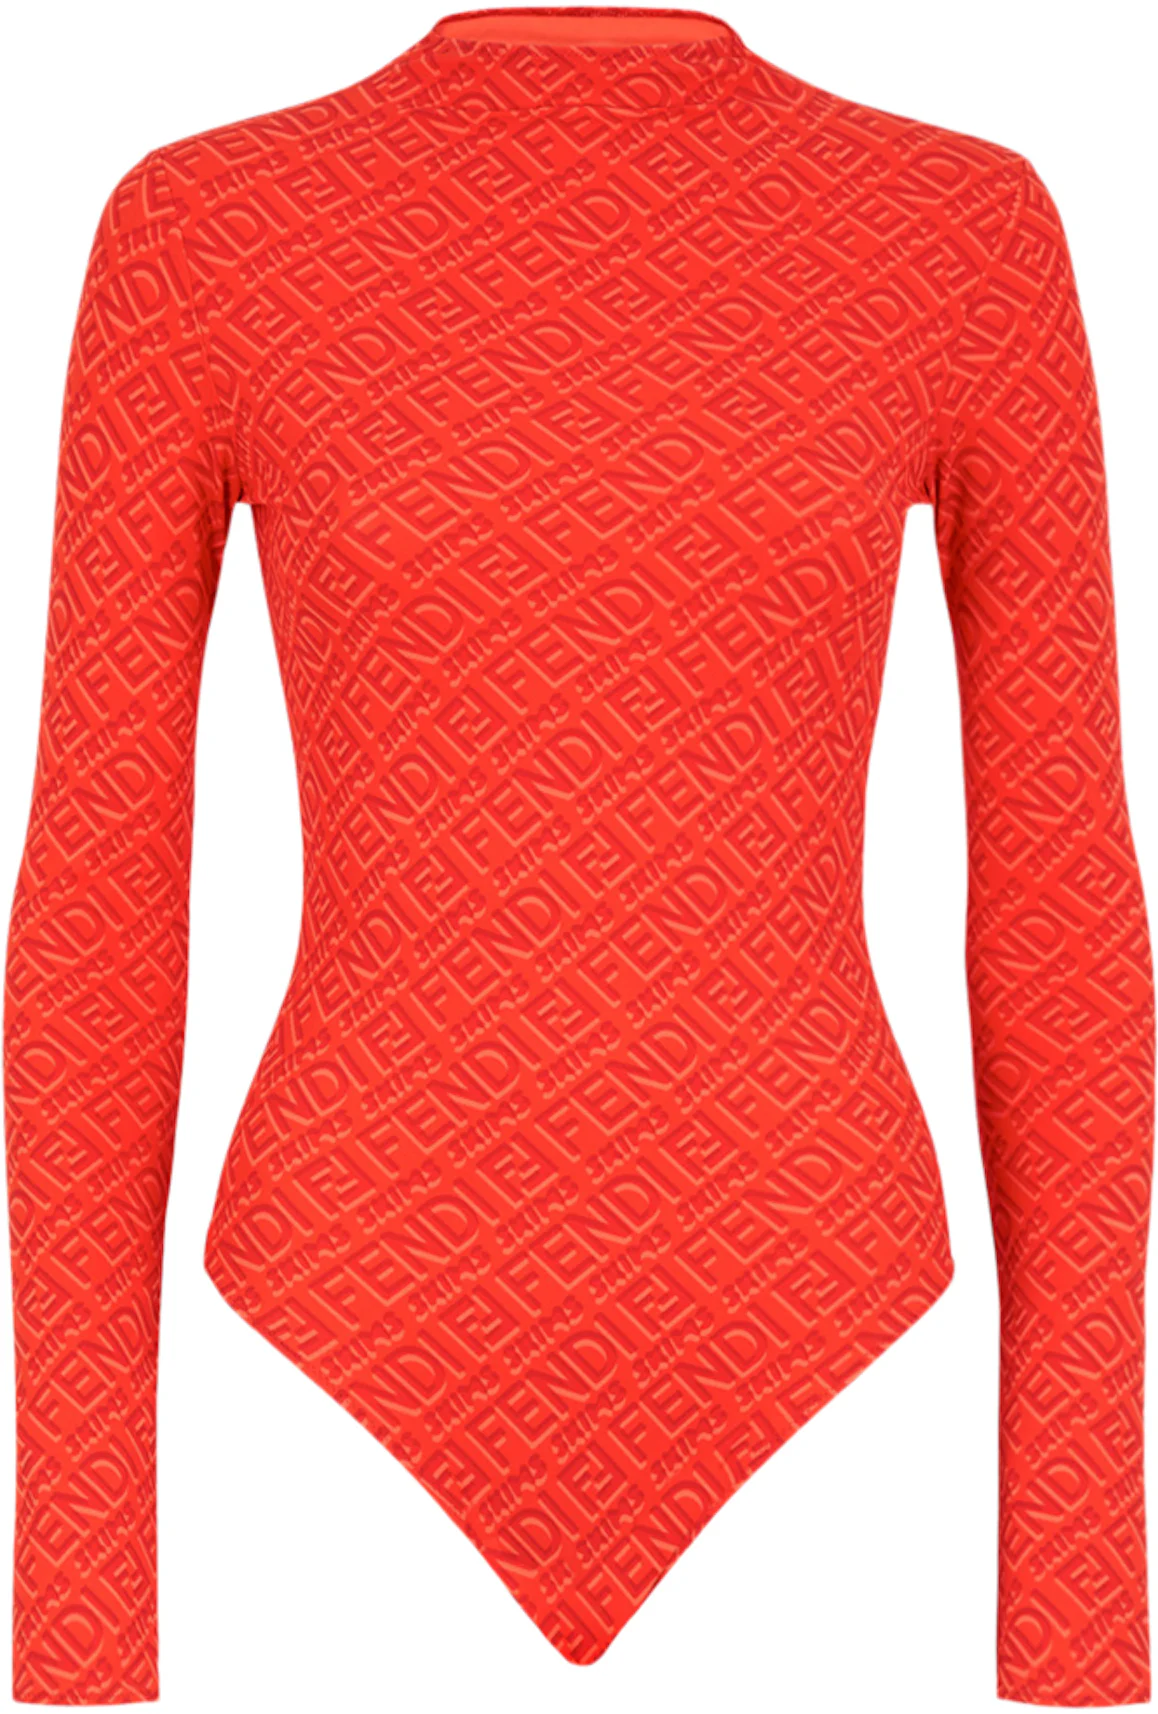 Bodysuit from long sleeves Fendi buy for 56 EUR in the UKRFashion store.  luxury goods brand Fendi. Best quality